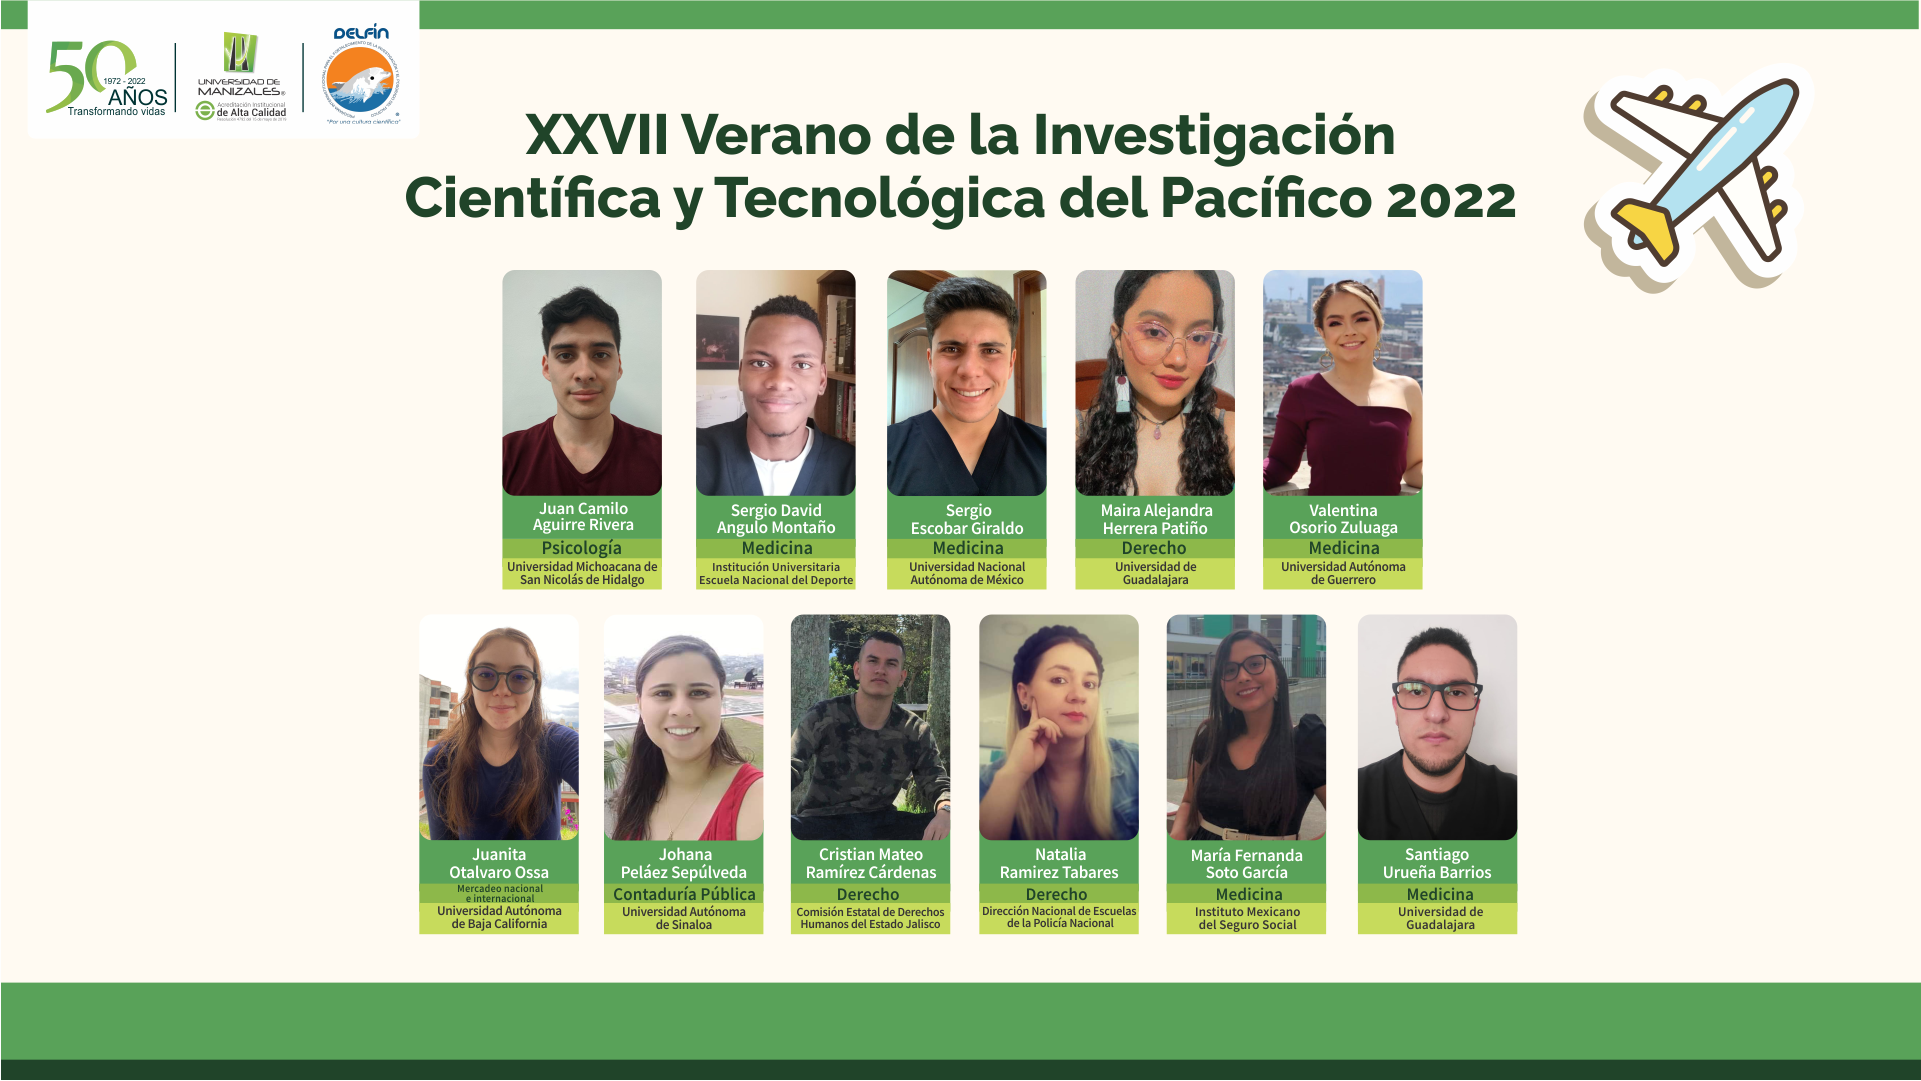 XXVII Verano de la Investigación Científica y Tecnológica del Pacífico 2022